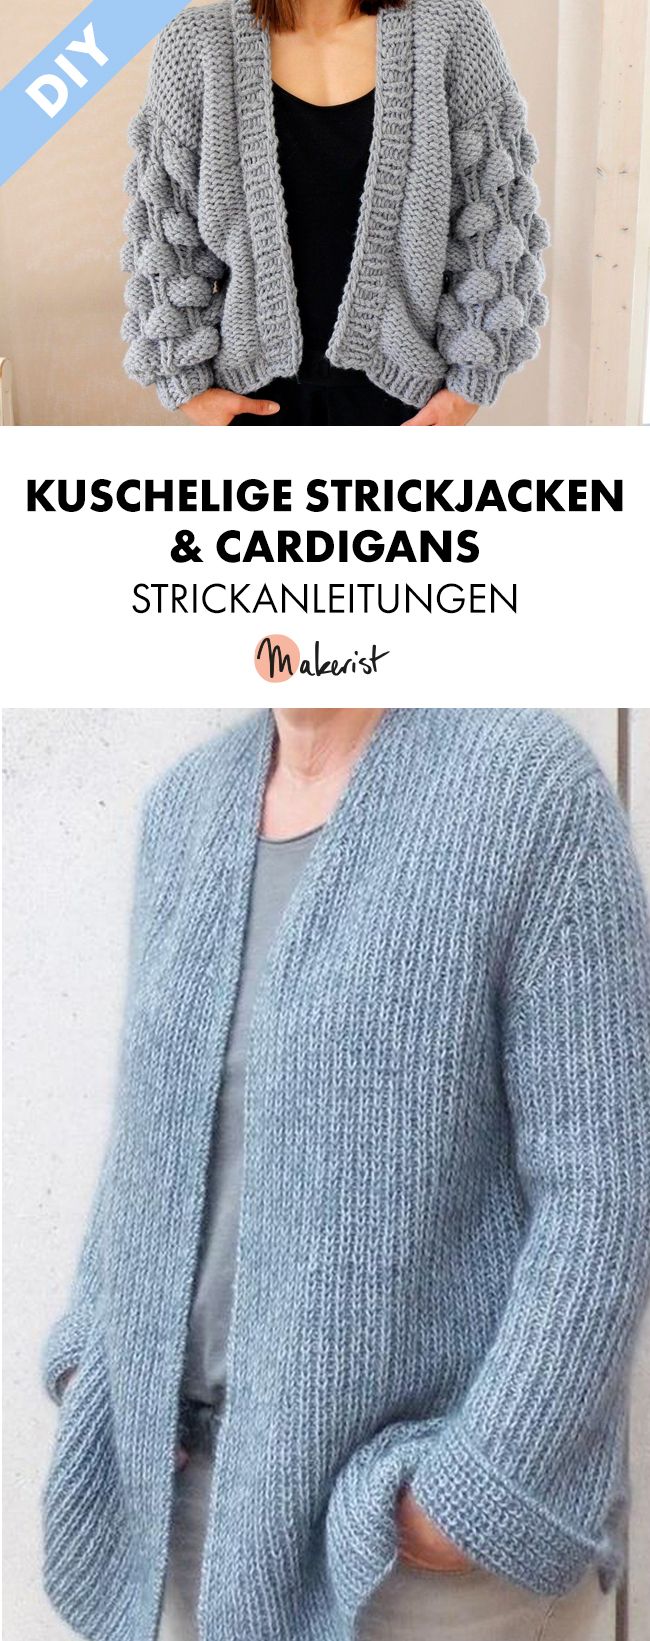 Strickjacken-und-Cardigans-stricken.jpg